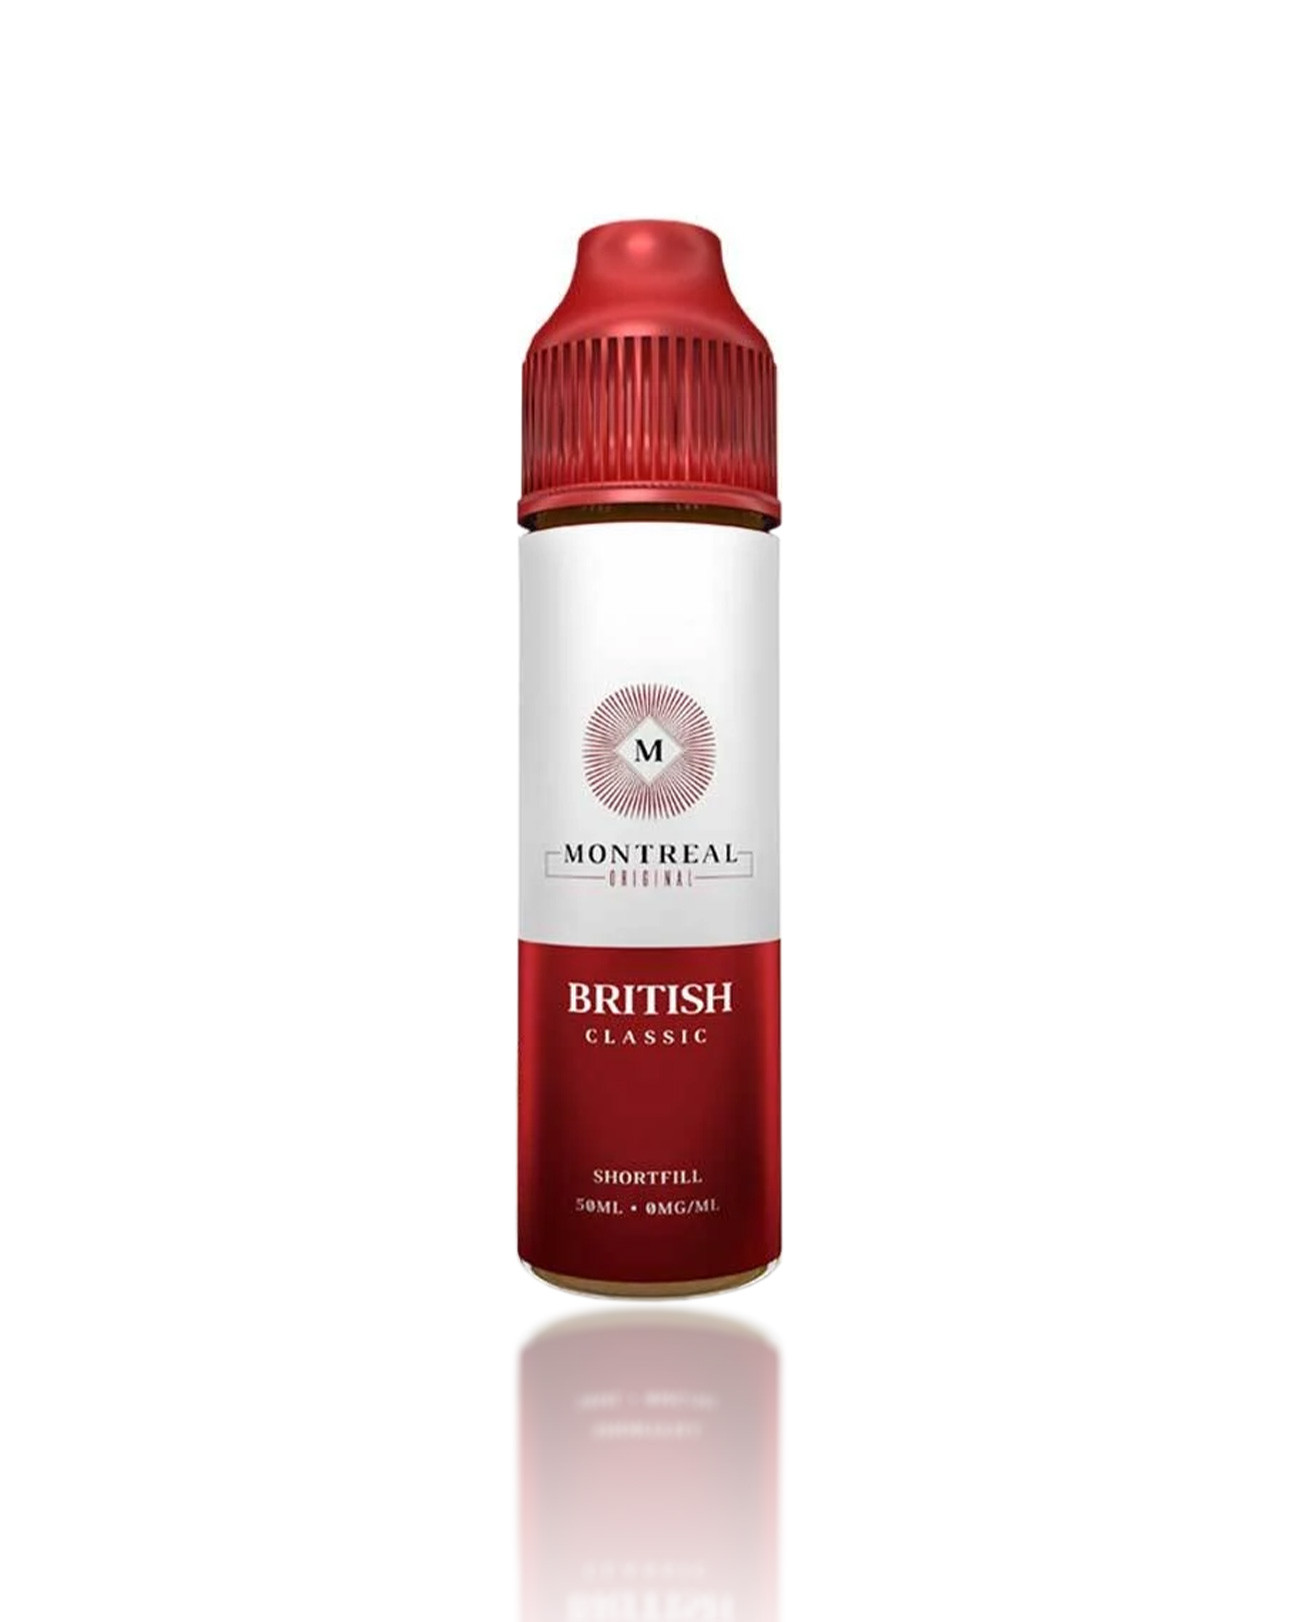 E-liquide British Classic par Montreal original en 40 ml all-day doux et rond